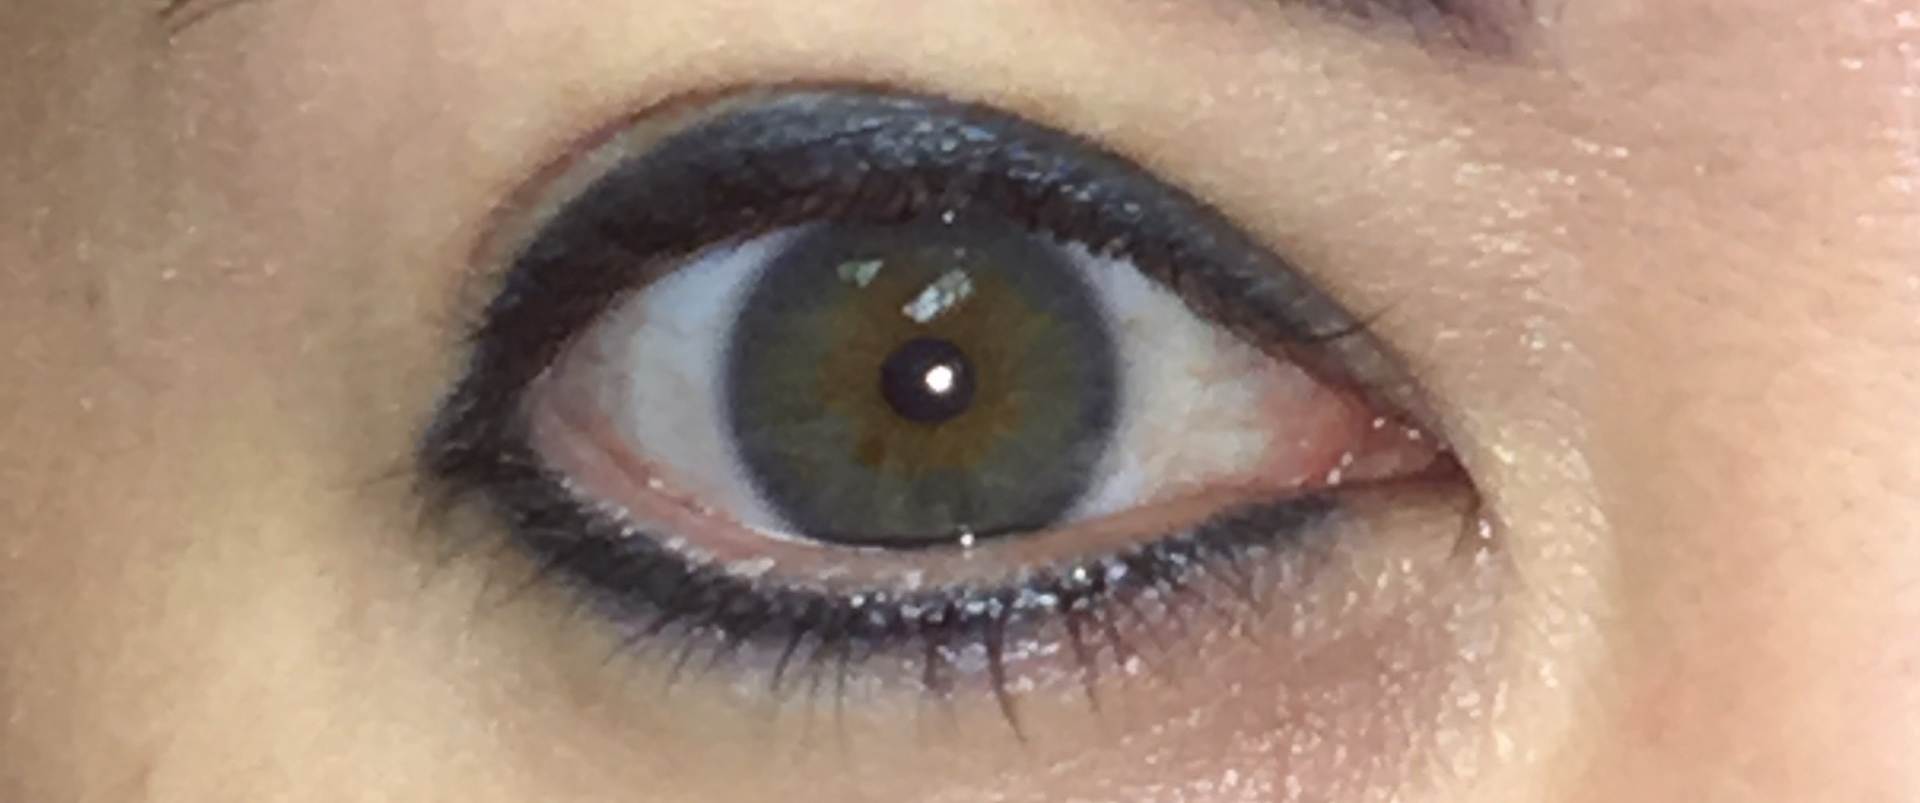 Closeup - permanent eye makeup